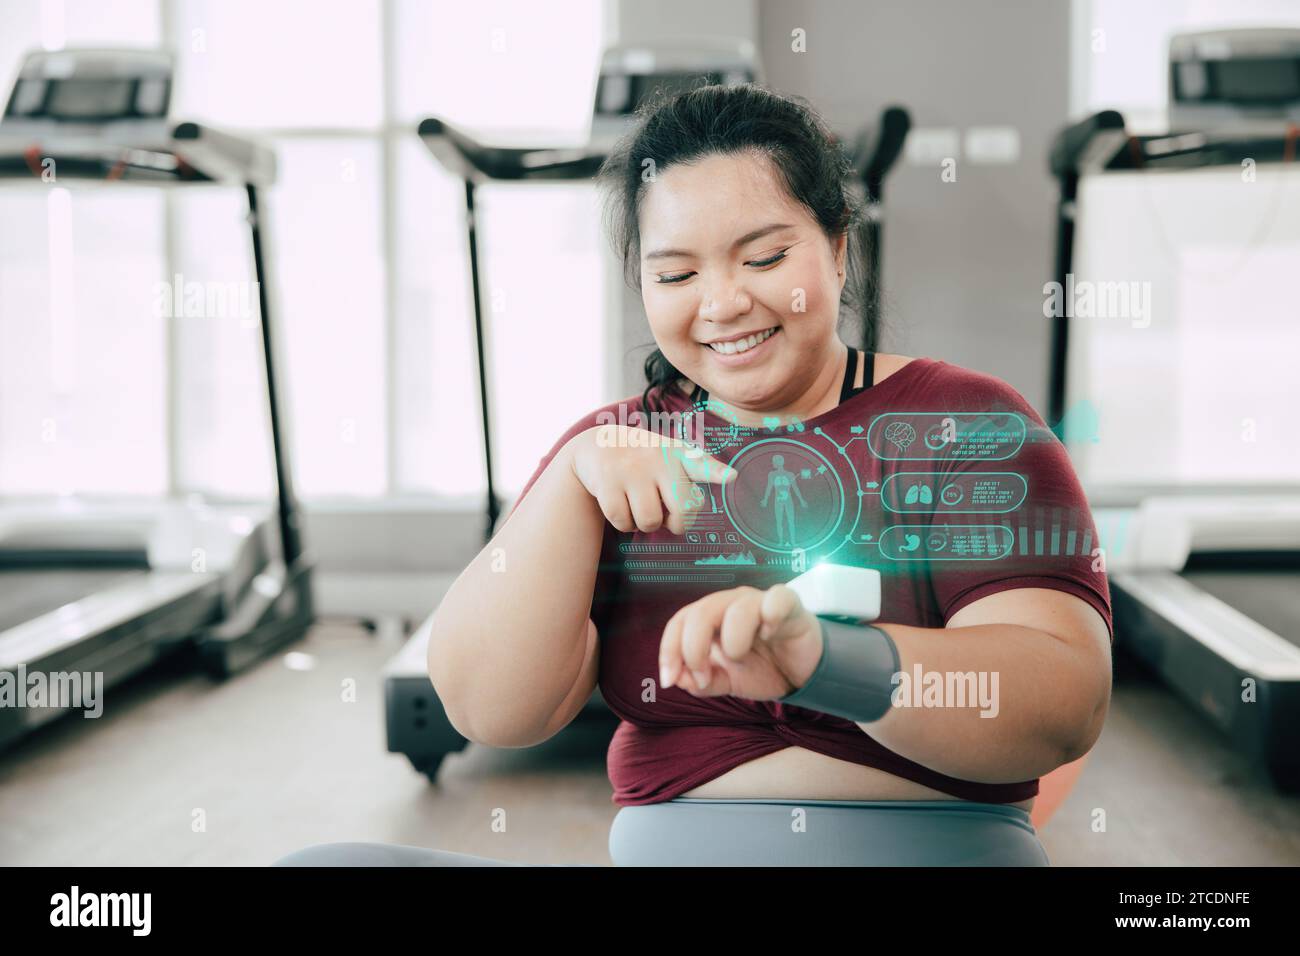 Gesunde fette Frauen glücklich mit Smart Wearable Wissenschaft Technologie Gerät Fitness Tracker zeigen Hologramm Körpereinsicht Aktivität Informationen. Stockfoto